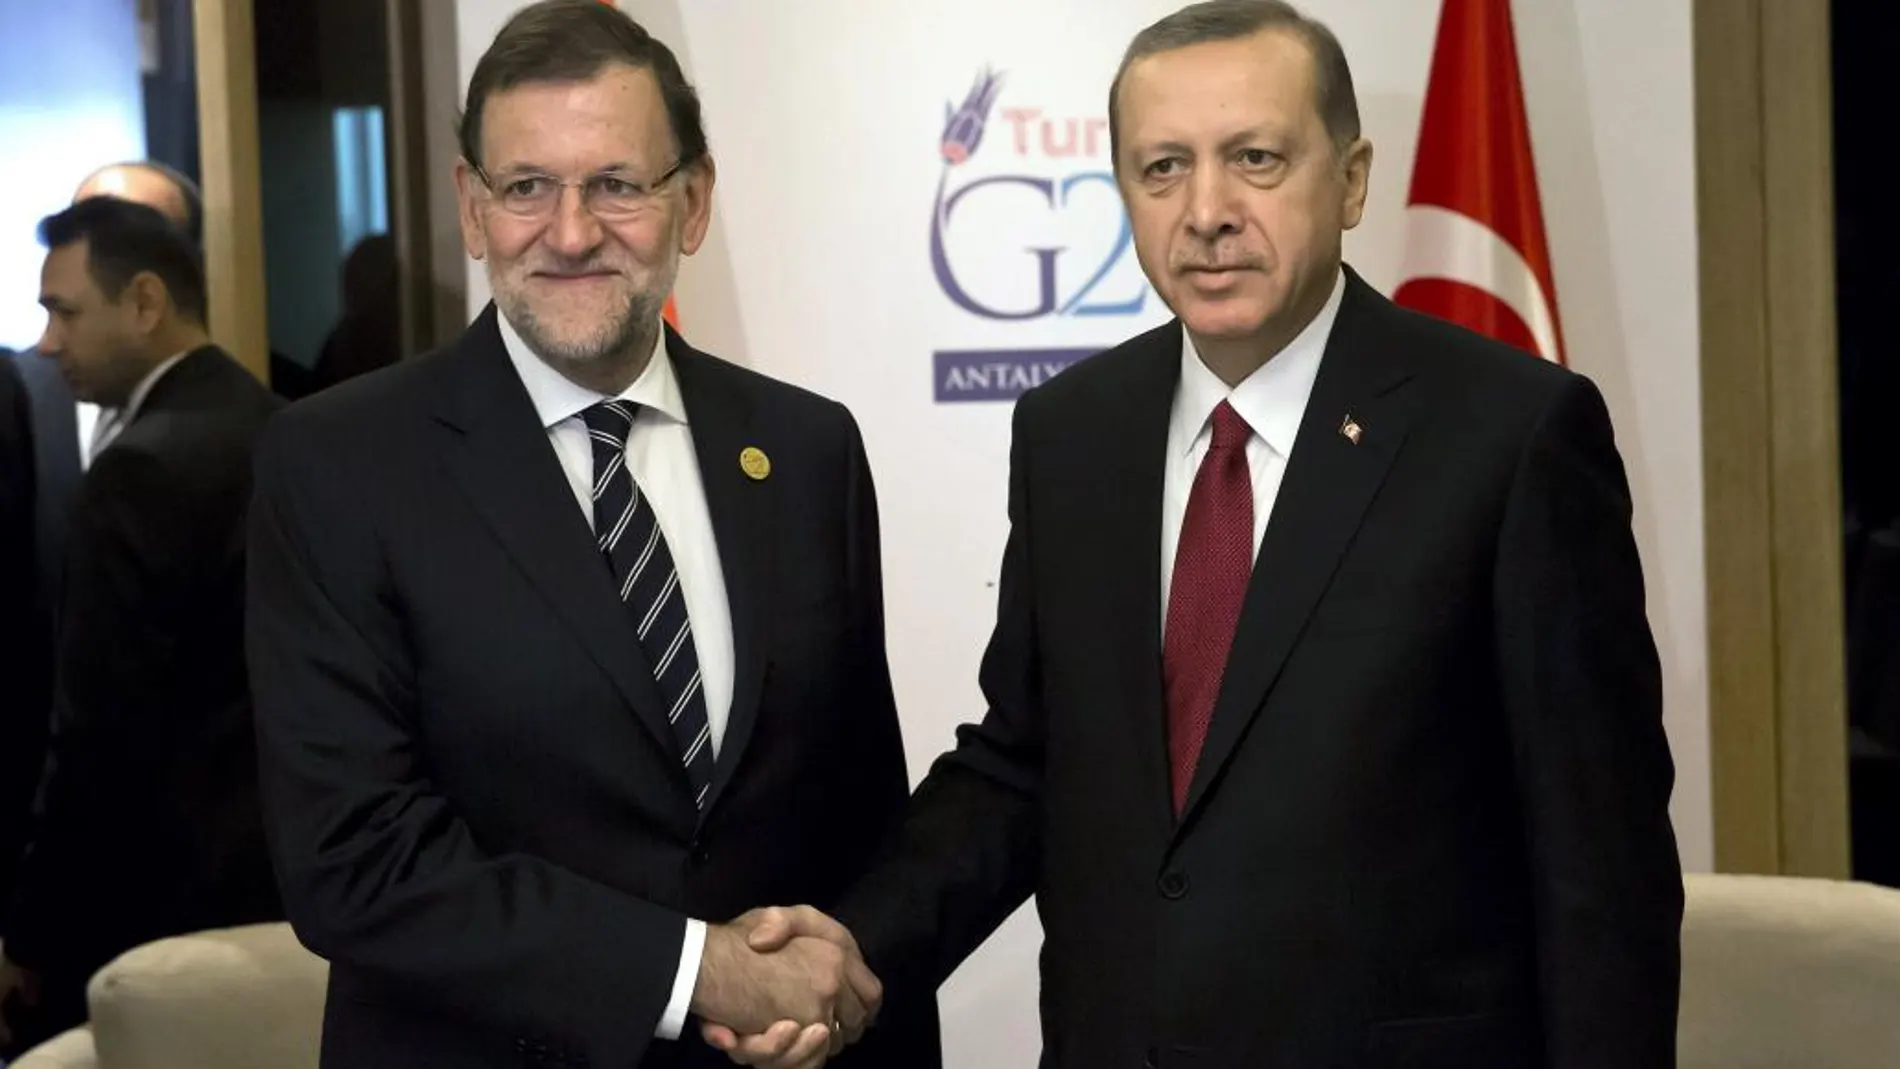 El presidente del Gobierno, Mariano Rajoy, y el presidente de la República de Turquía, Recep Tayyip Erdogan (d), durante la reunión bilateral que han mantenido en Antalya